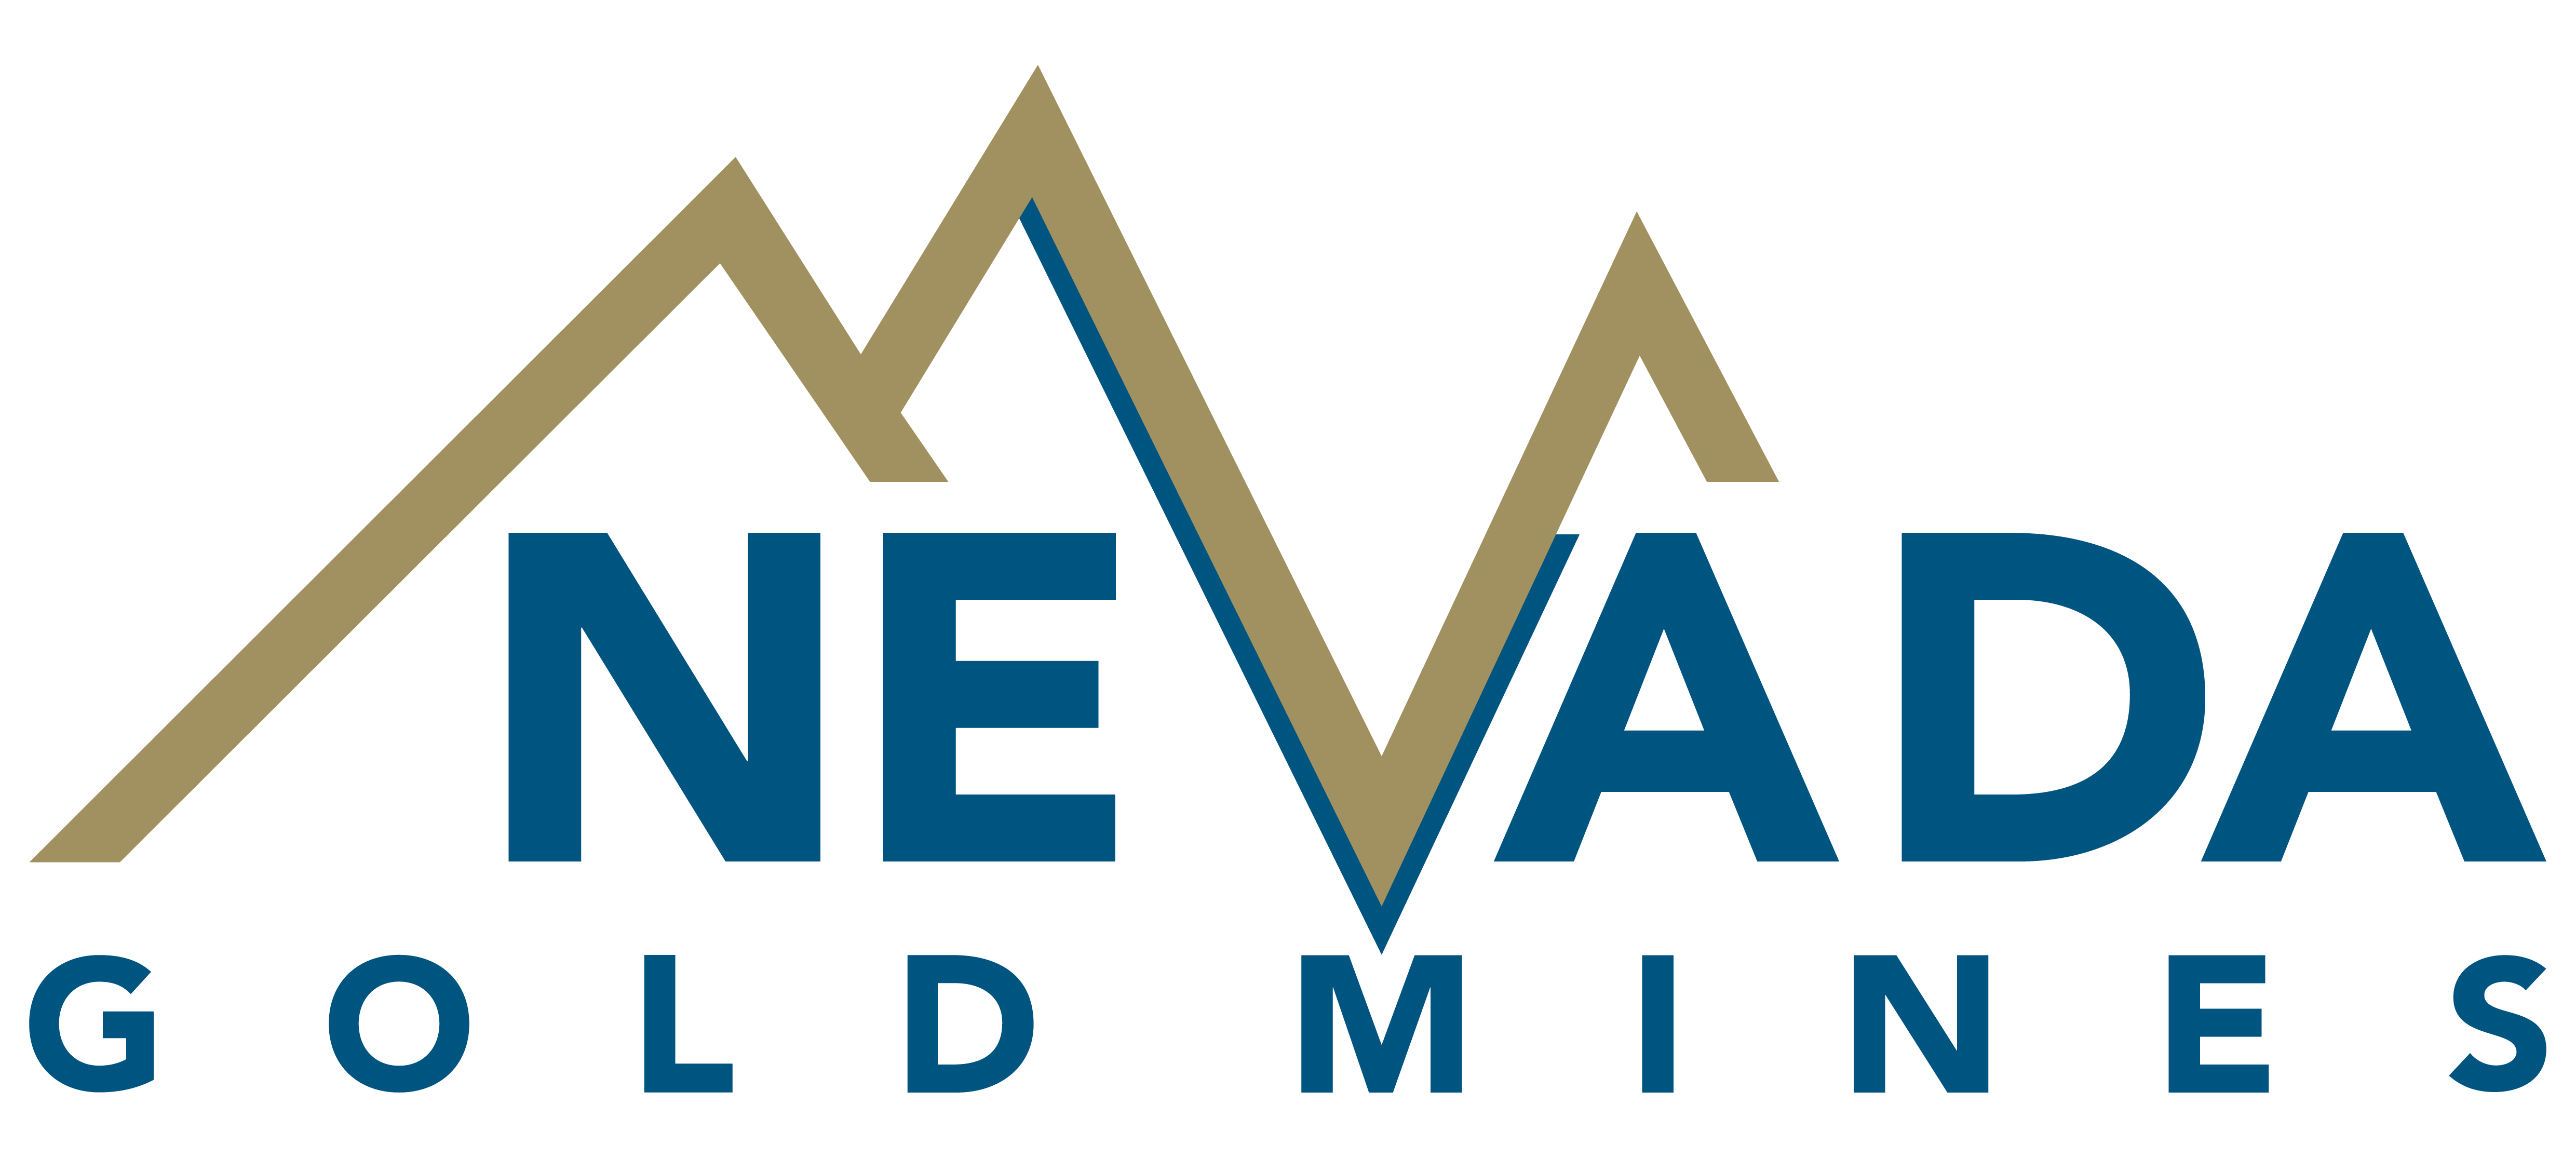 Nevada Gold Mines Logo